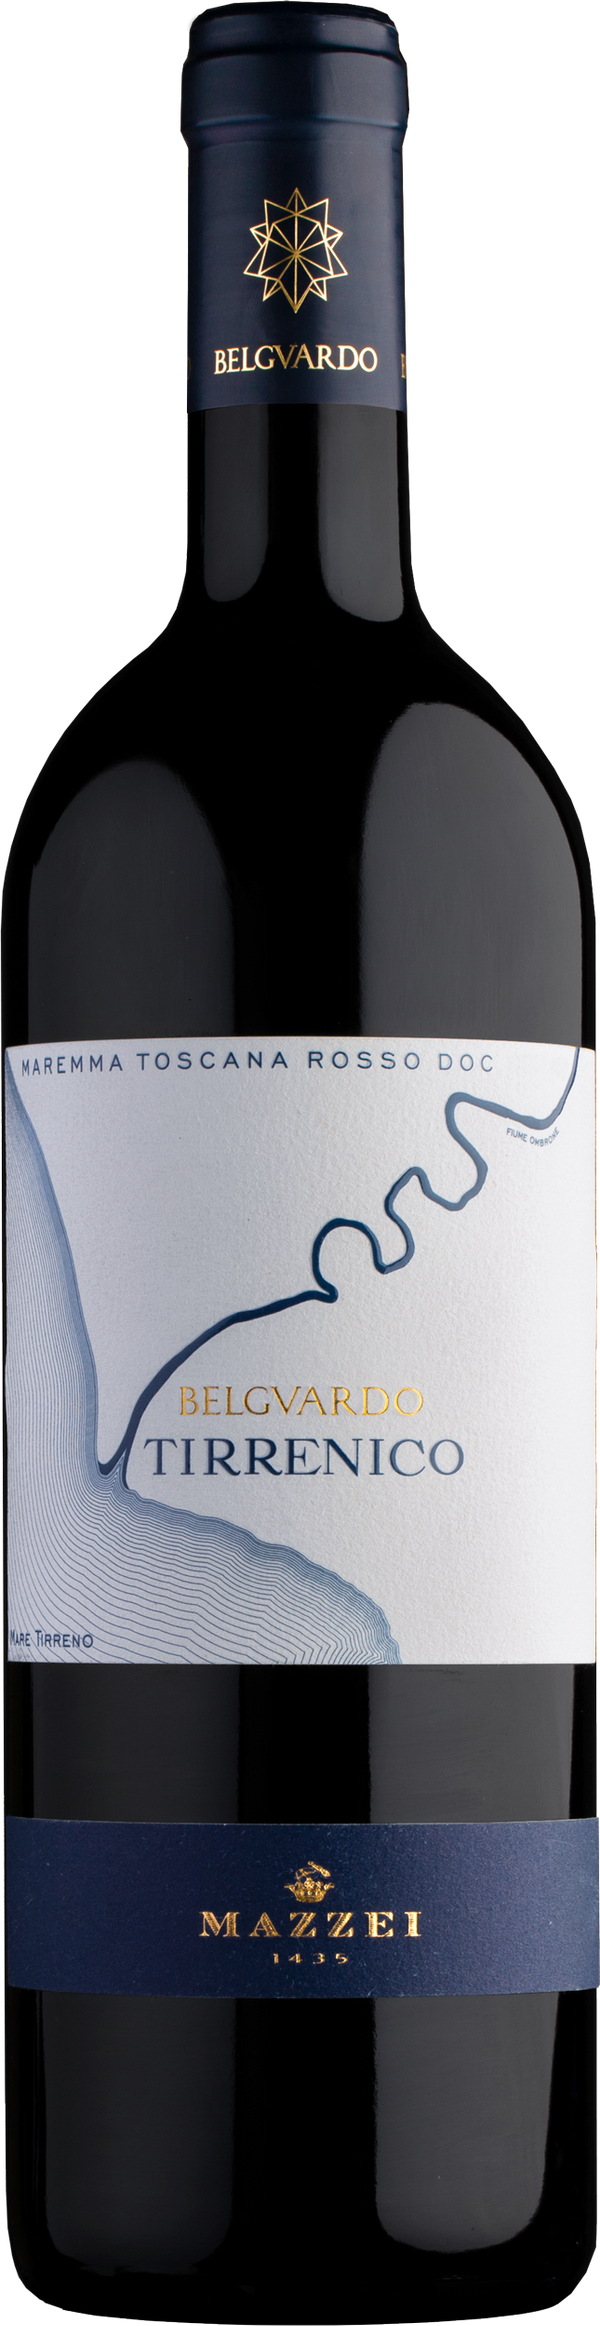 Maremma Toscana Rosso "Tirrenico" DOC 2018 Belguardo